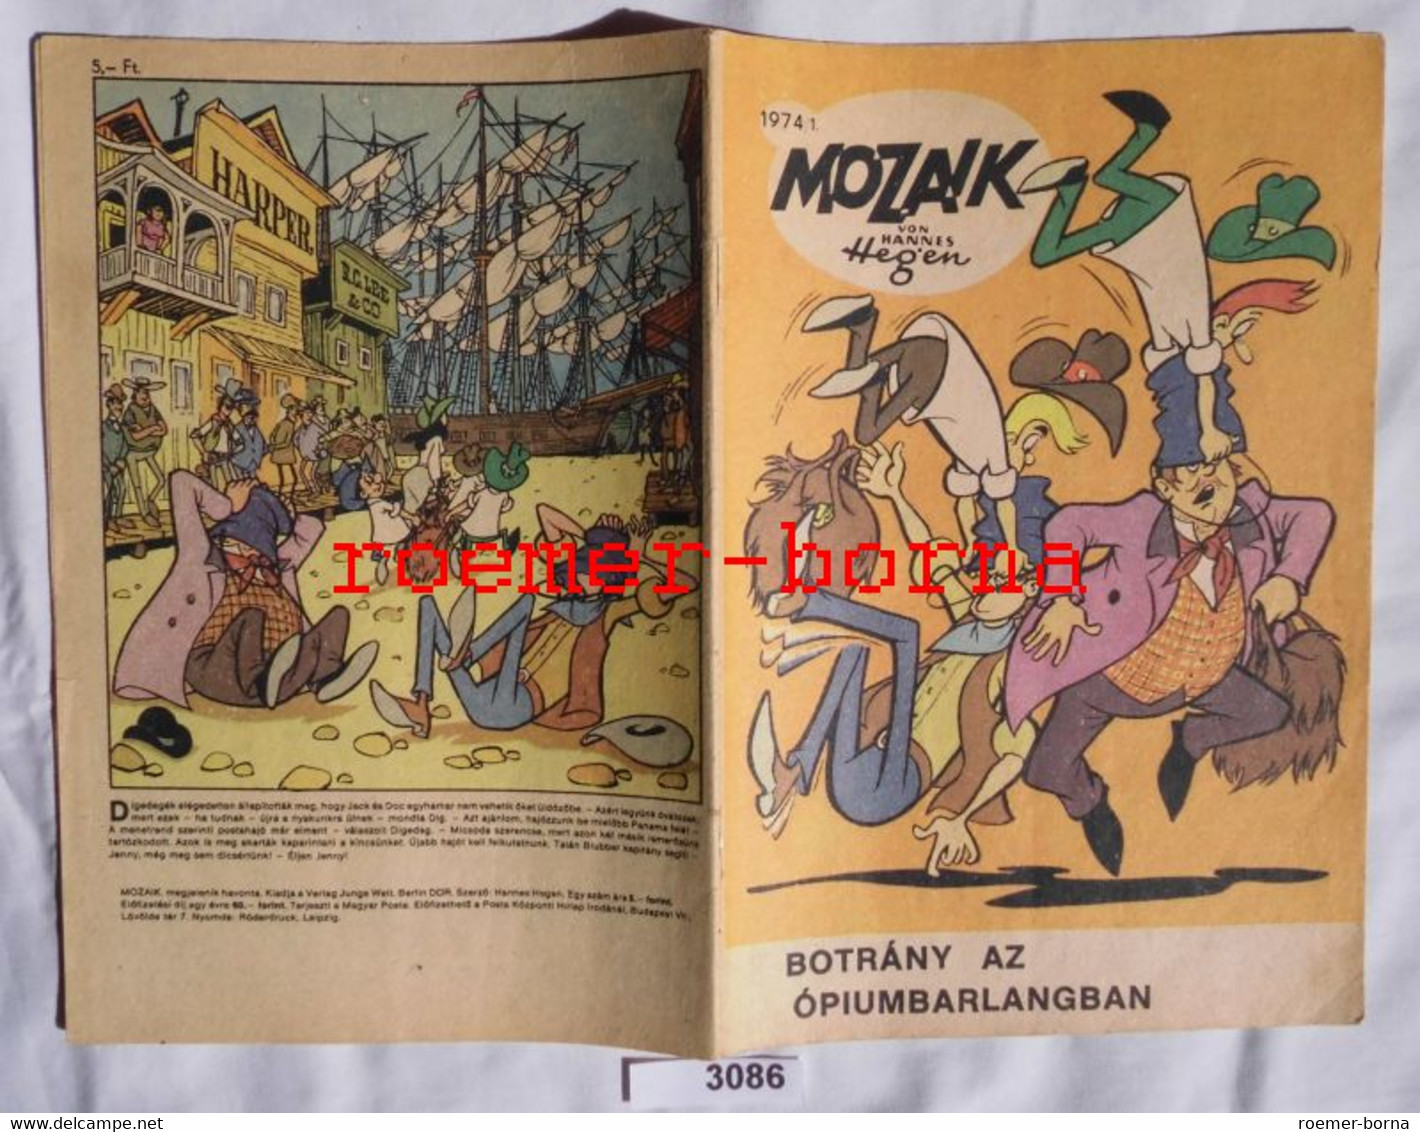 Mozaik Mosaik Von Hannes Hegen Seltene Export Ausgabe Für Ungarn Nr 1974/1 (entspricht Heft 195) - Digedags